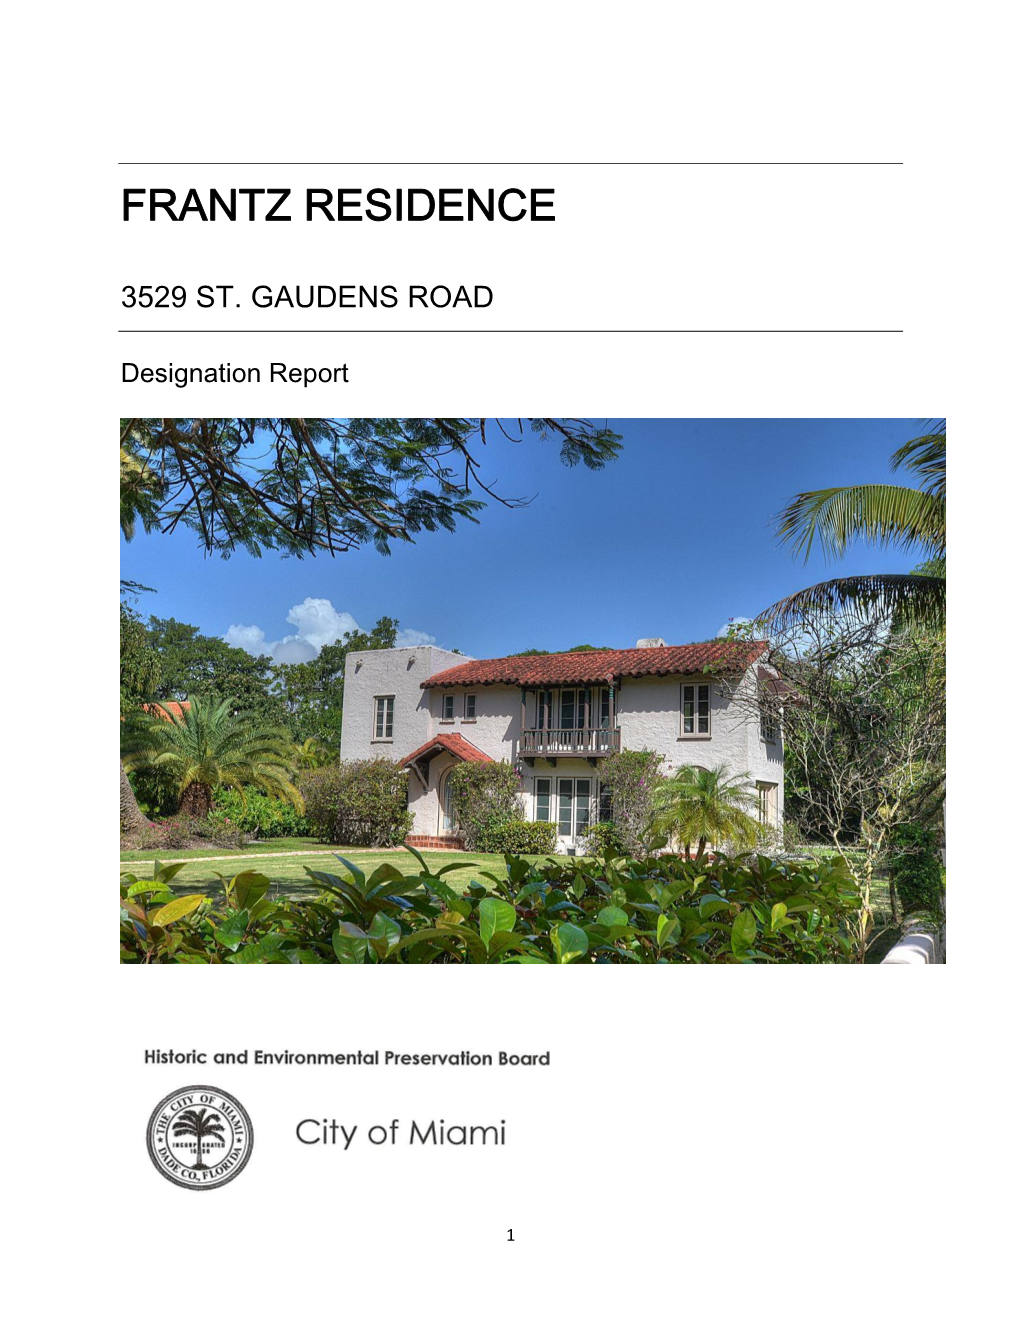 Frantz Residence